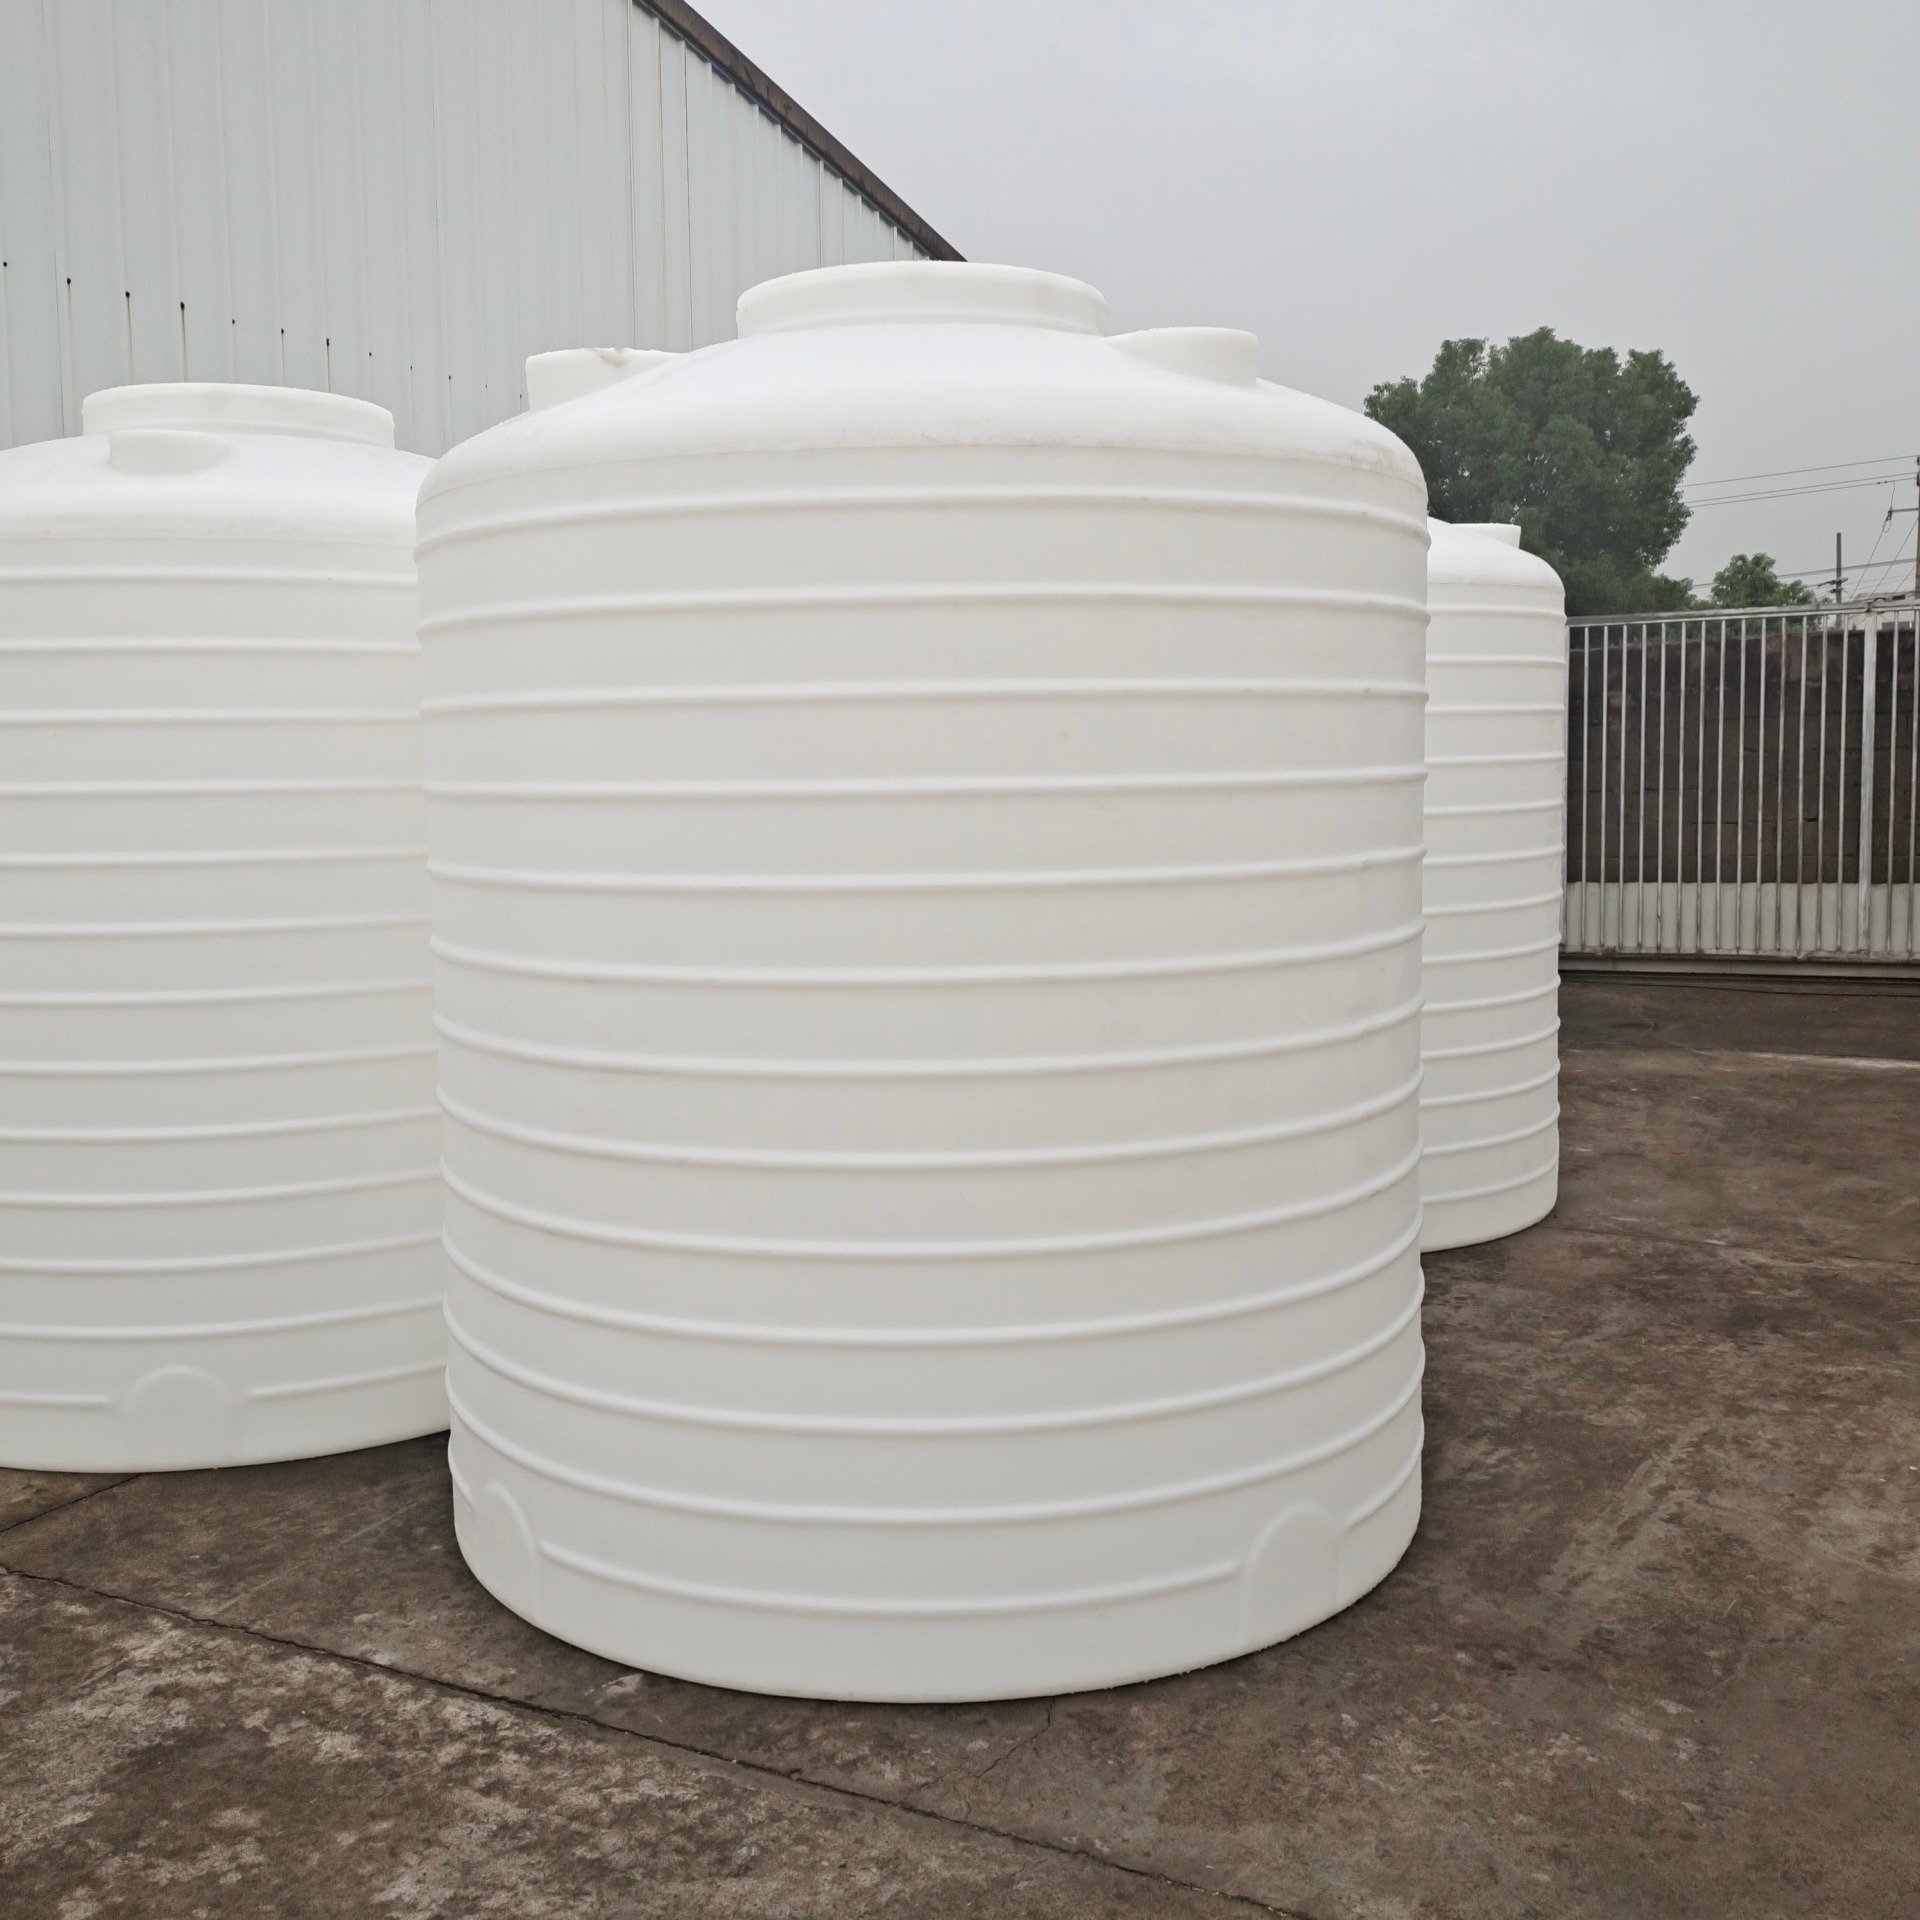 30吨塑料容器 LLDPE材质 30立方聚乙烯水塔防腐蚀 化工用品存放